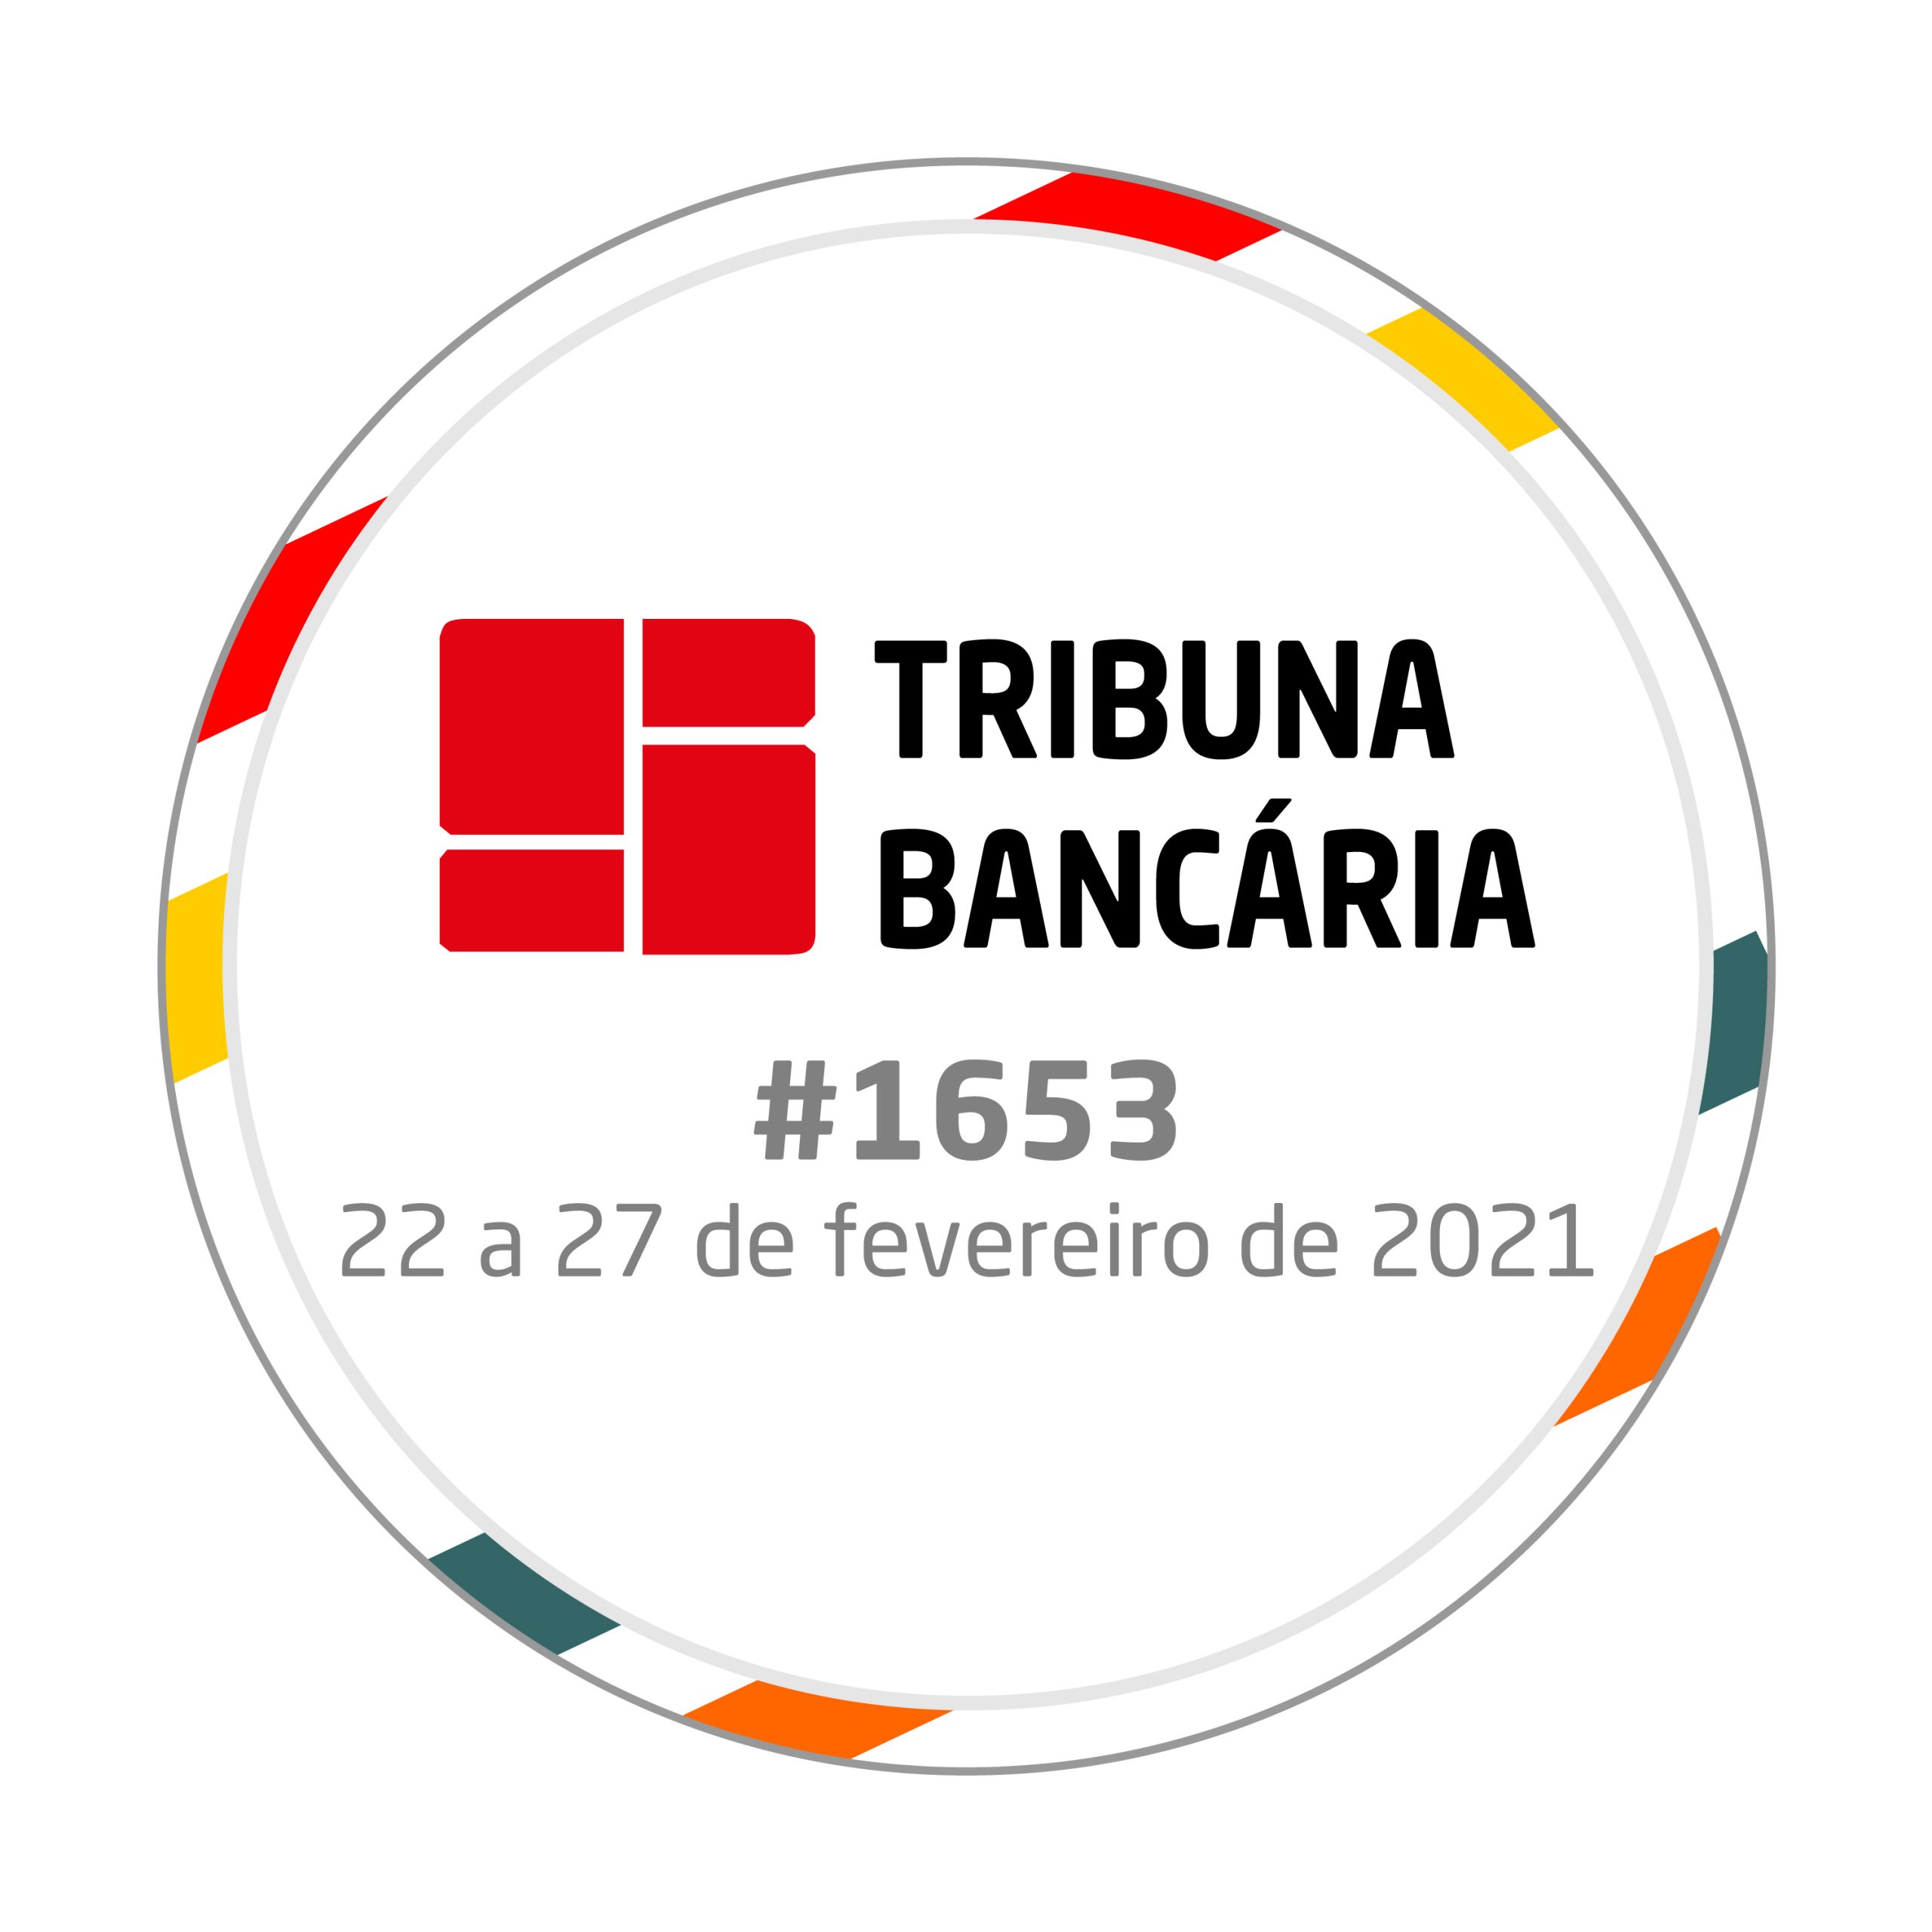 Tribuna Bancária 1653 | 22 a 27 de fevereiro de 2021